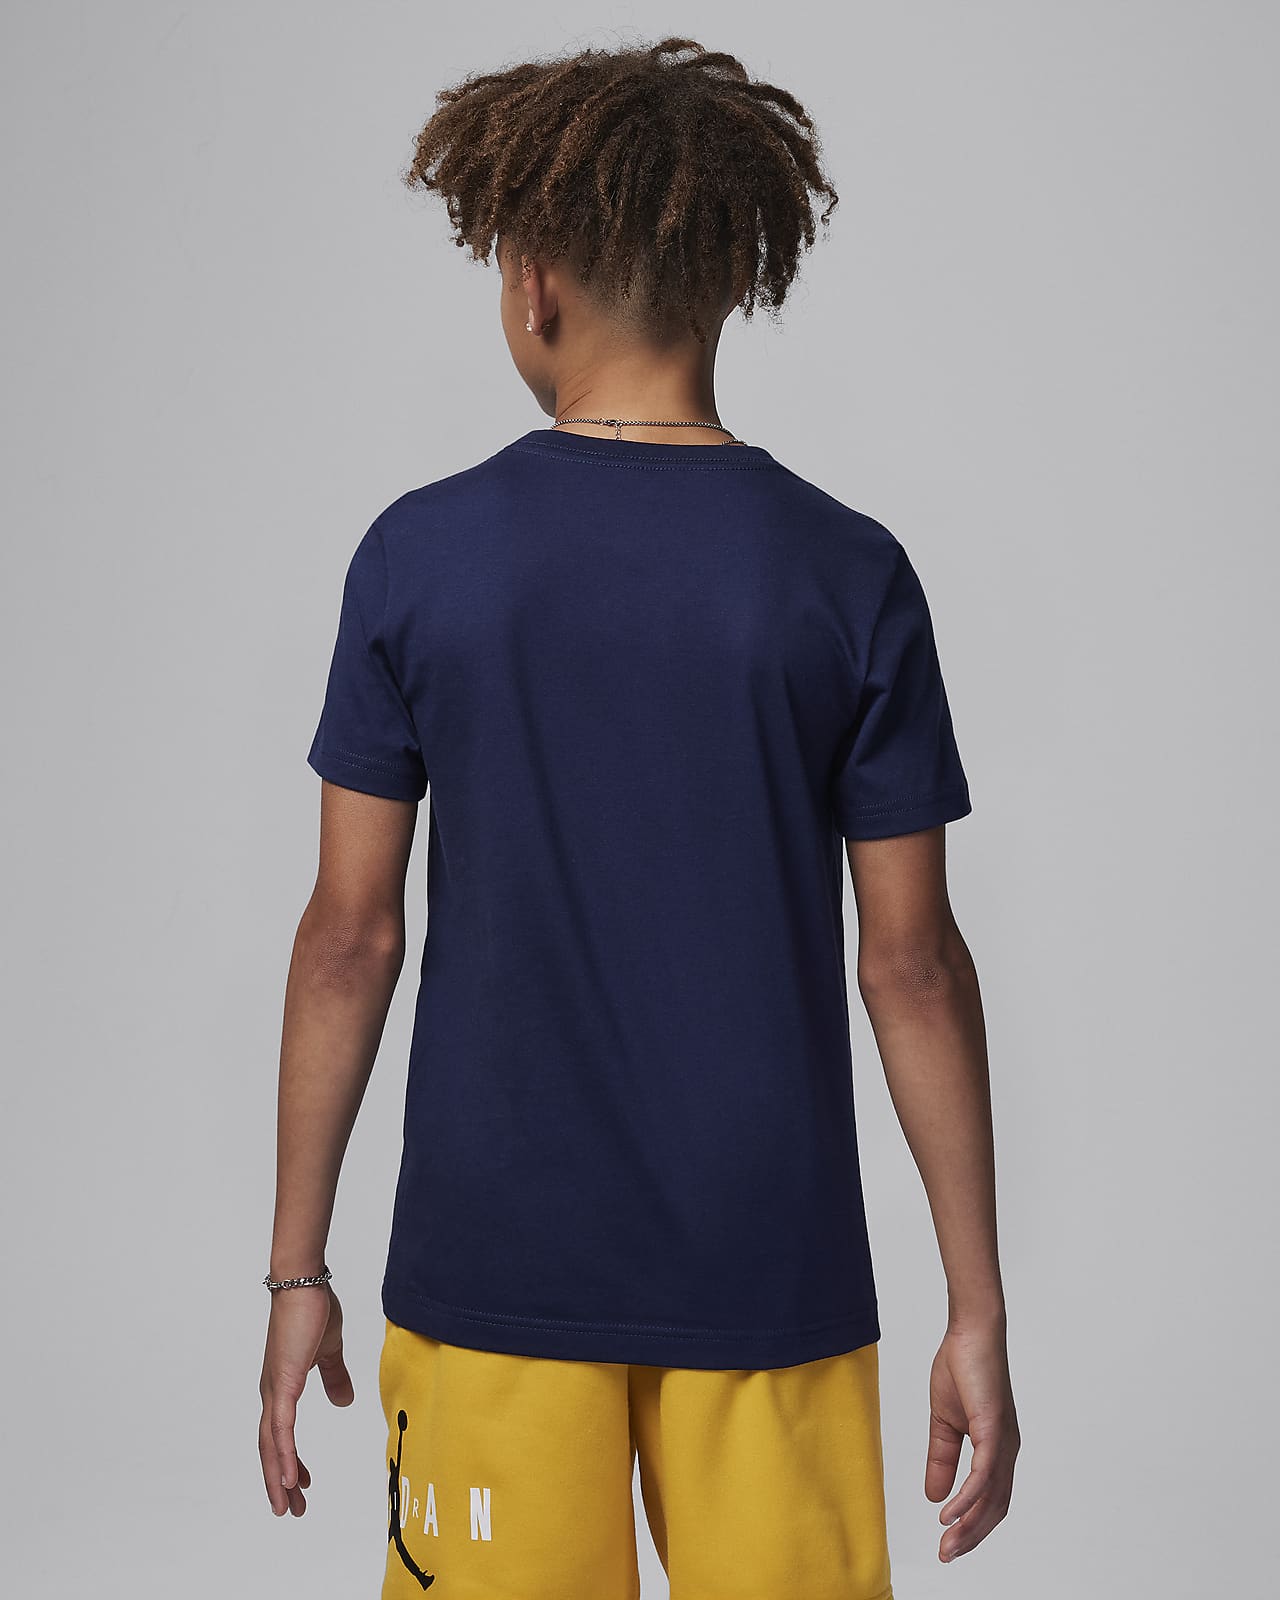 Camiseta Nike Air Jordan big logo Junior